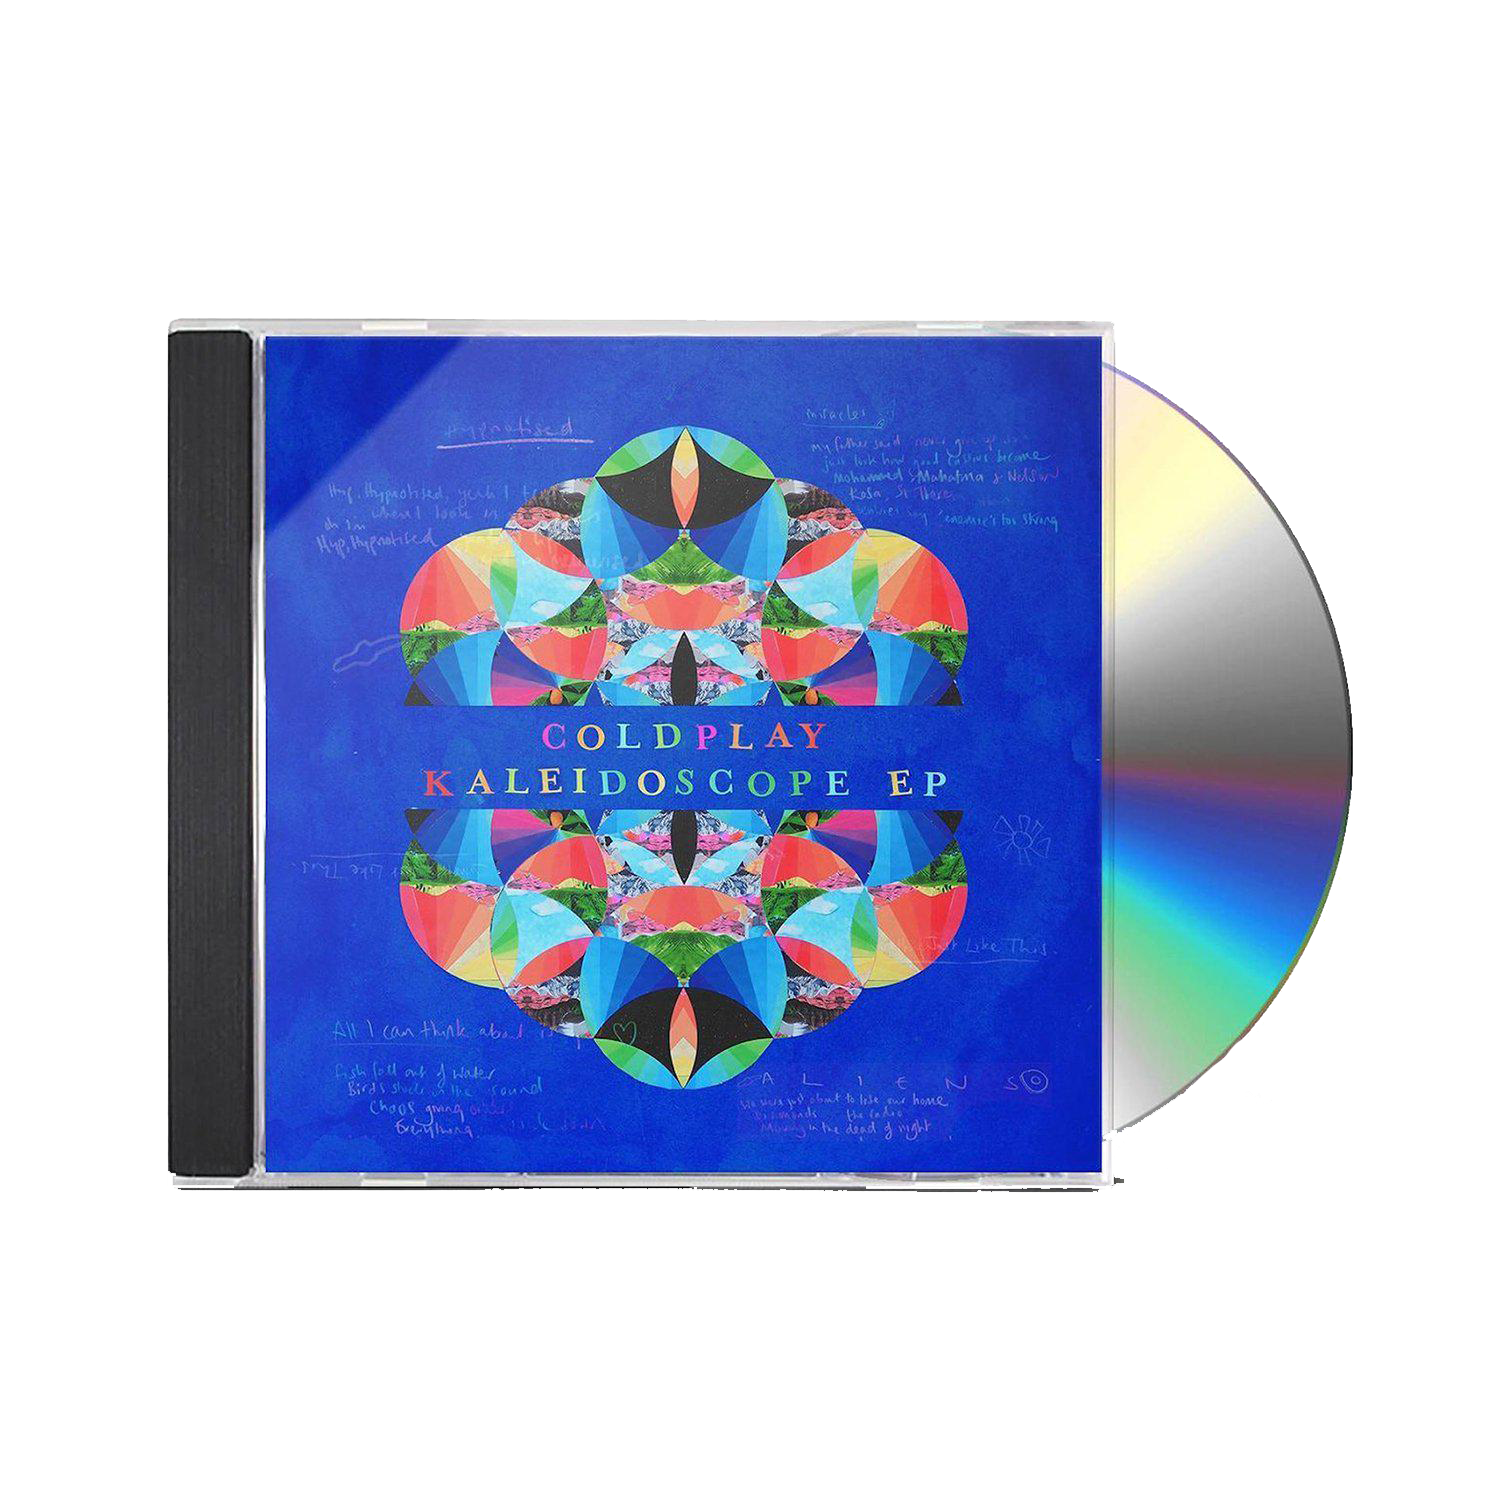 KALEIDOSCOPE EP - CD-Coldplay